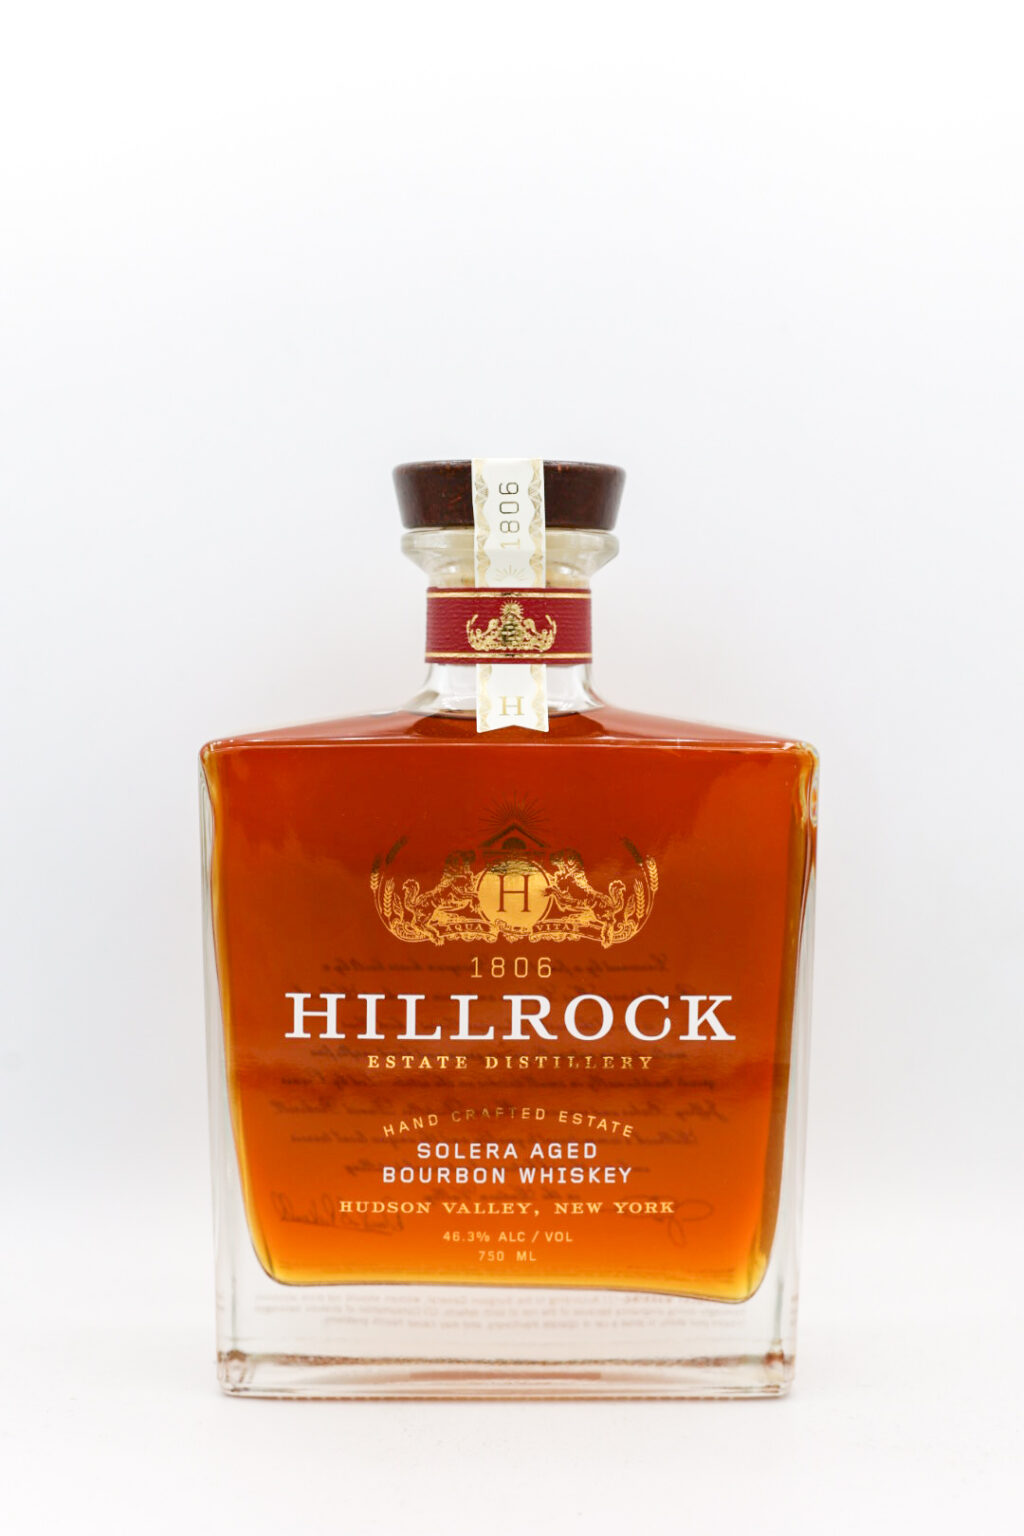 Hillrock Hillrock Solera Aged Bourbon 750ml